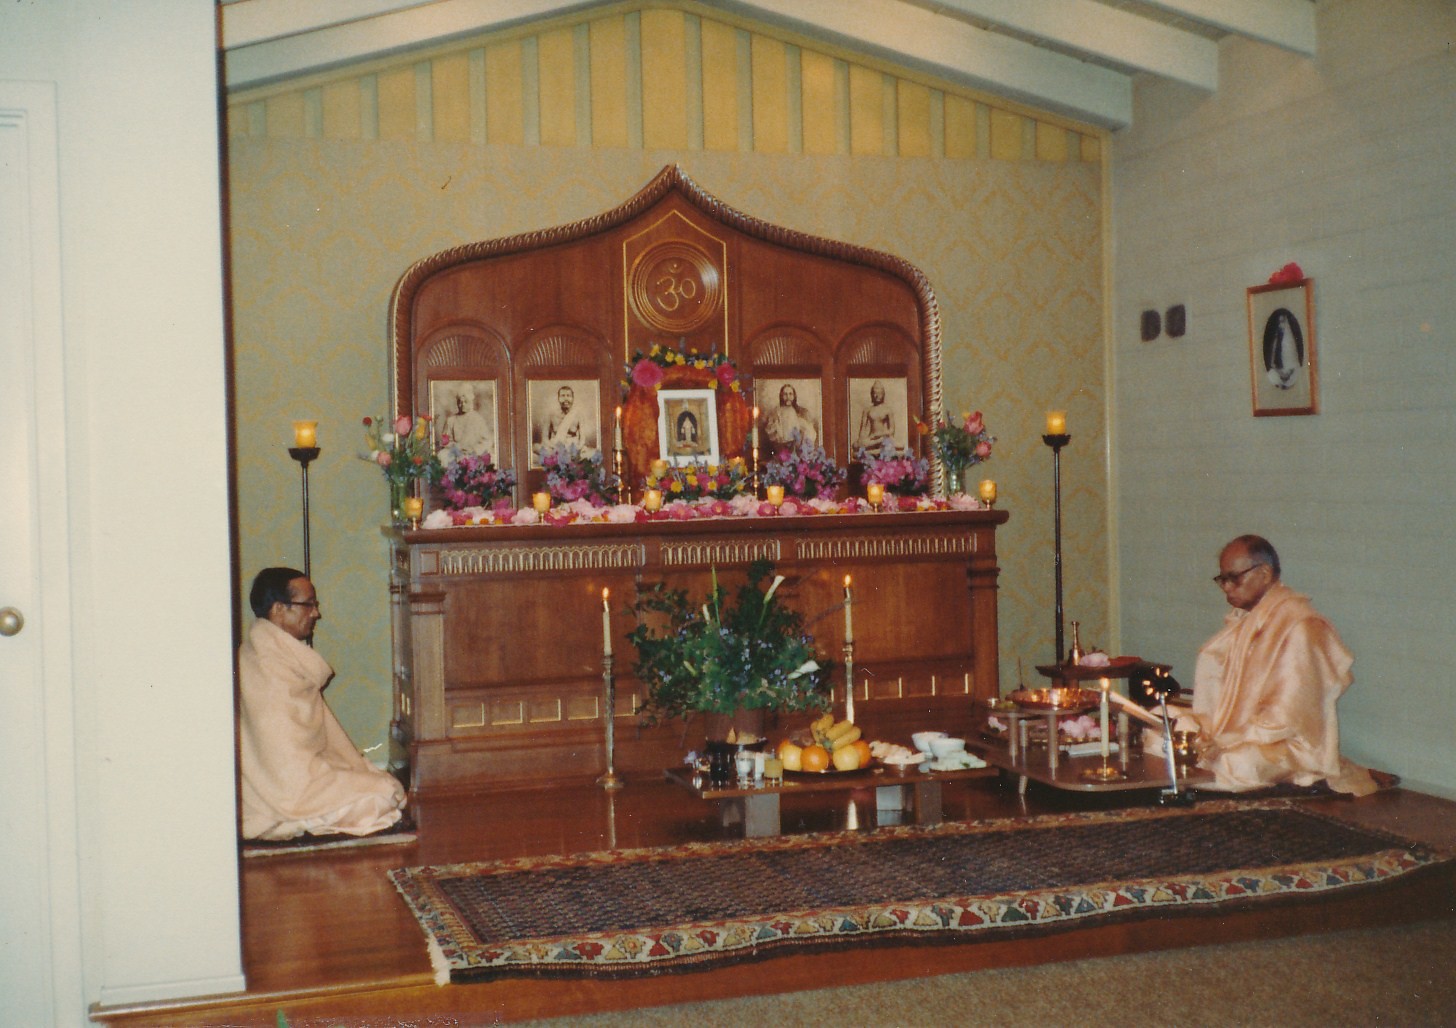 Swami Pramathananda Swami Shraddhananda Sri Chaitanya Puja